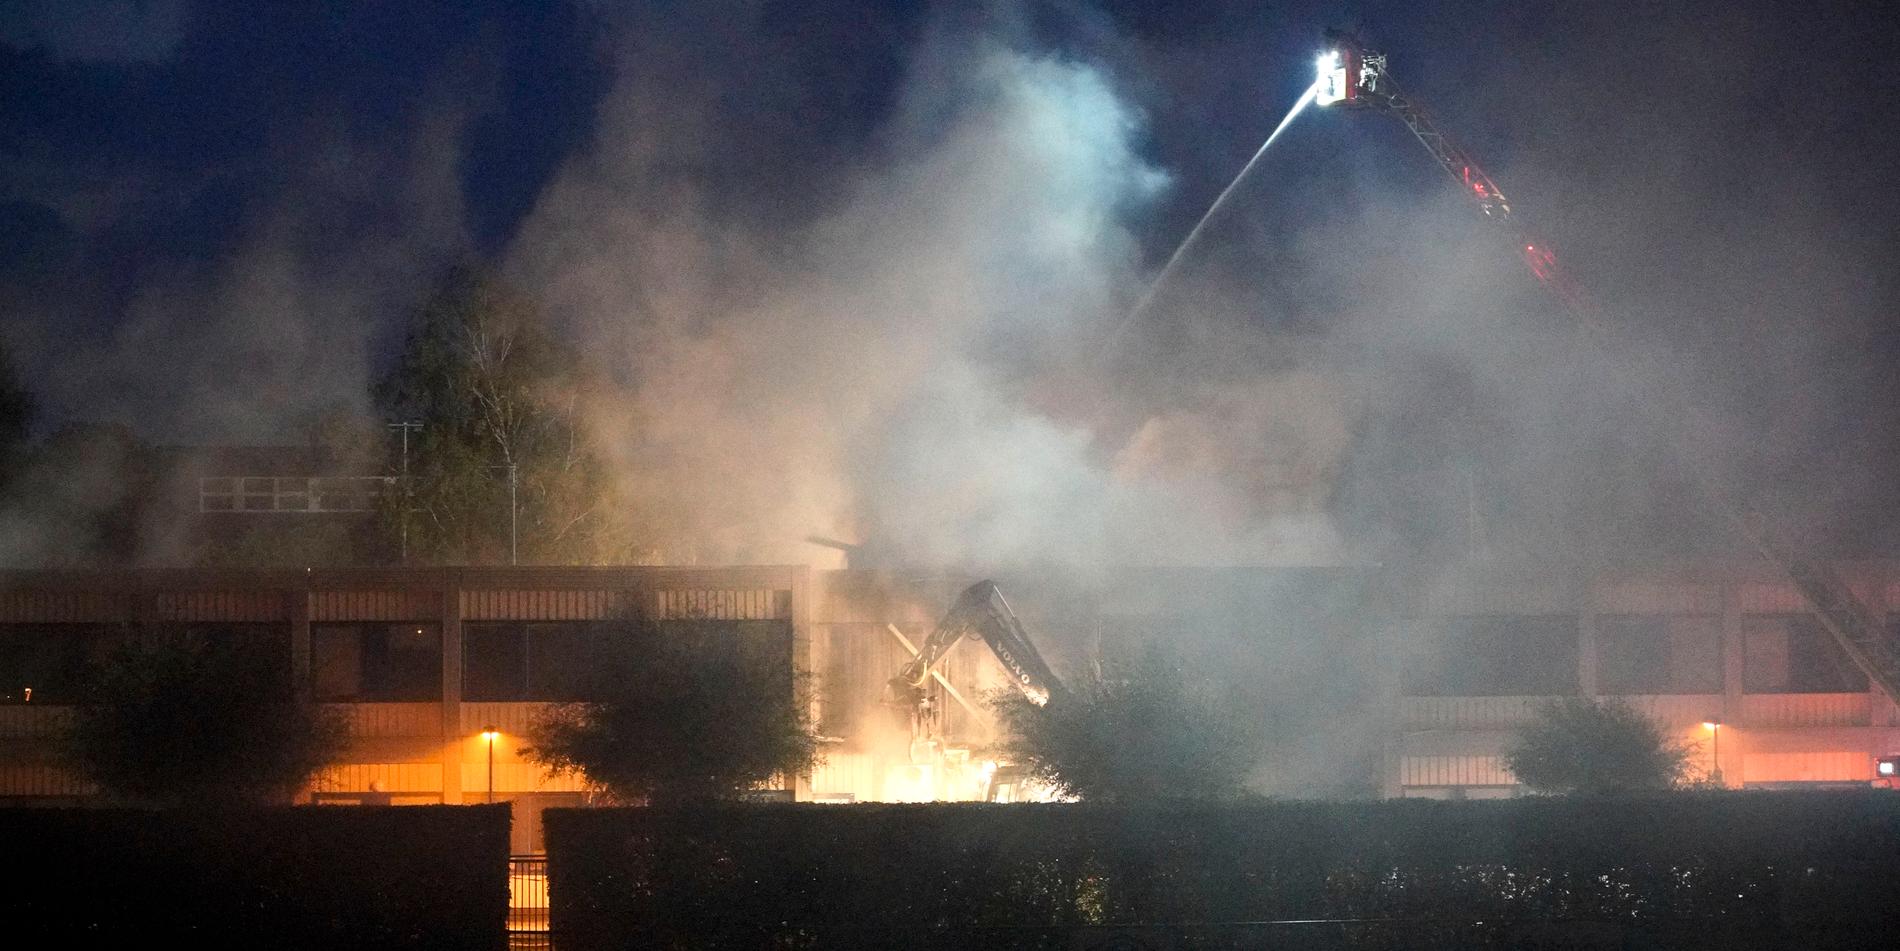 Räddningstjänsten släcker en omfattande brand i skolan i Oxie natten mot 7 september.  Delar av skolan totalförstördes och branden utreds som mordbrand.